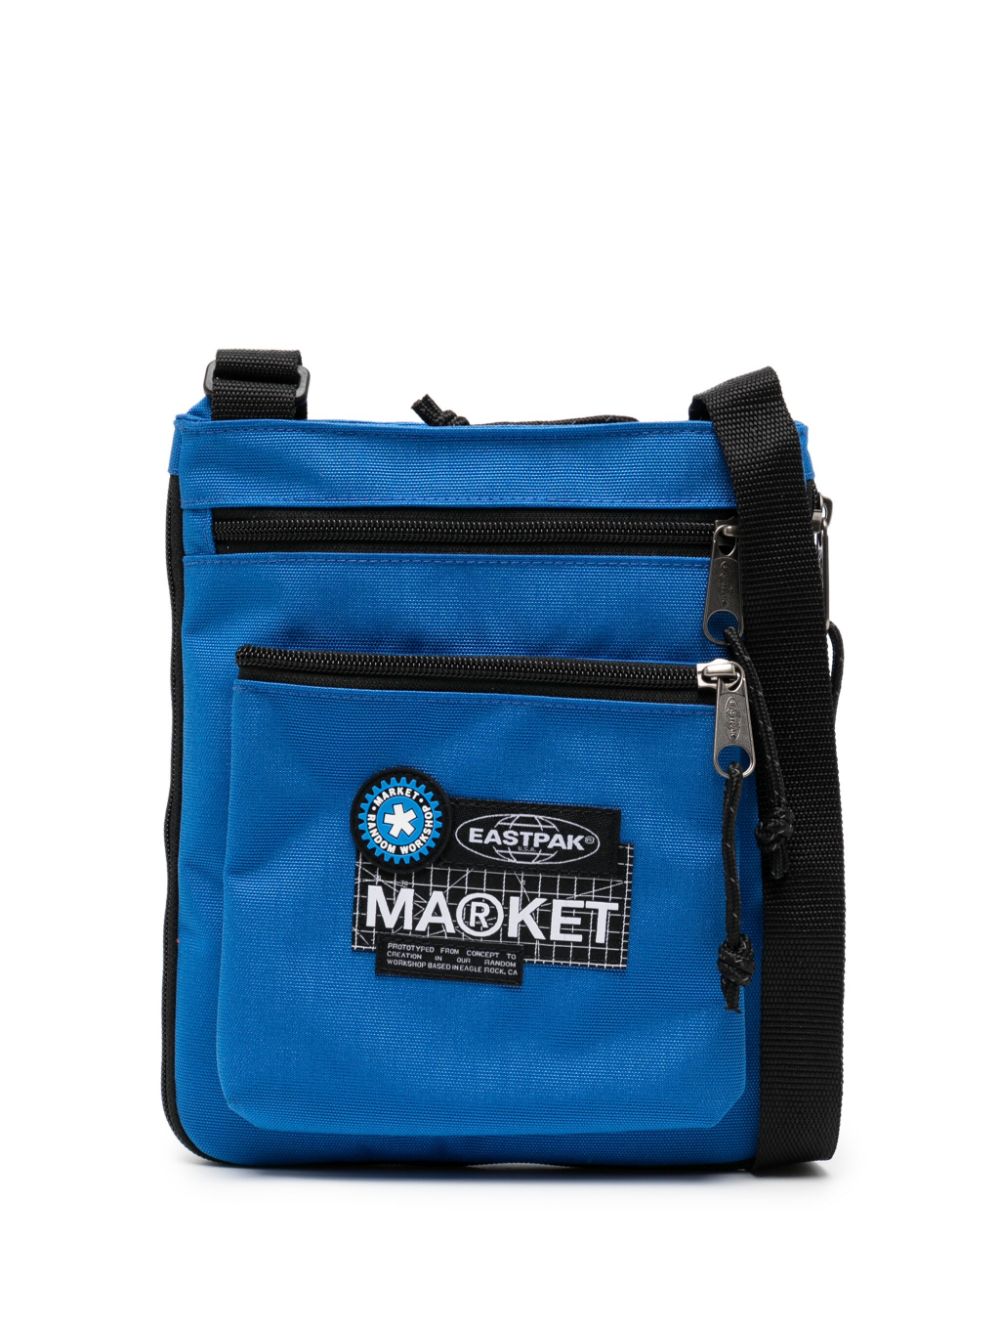 Eastpak x Market Studios Rusher shoulder bag - Blu